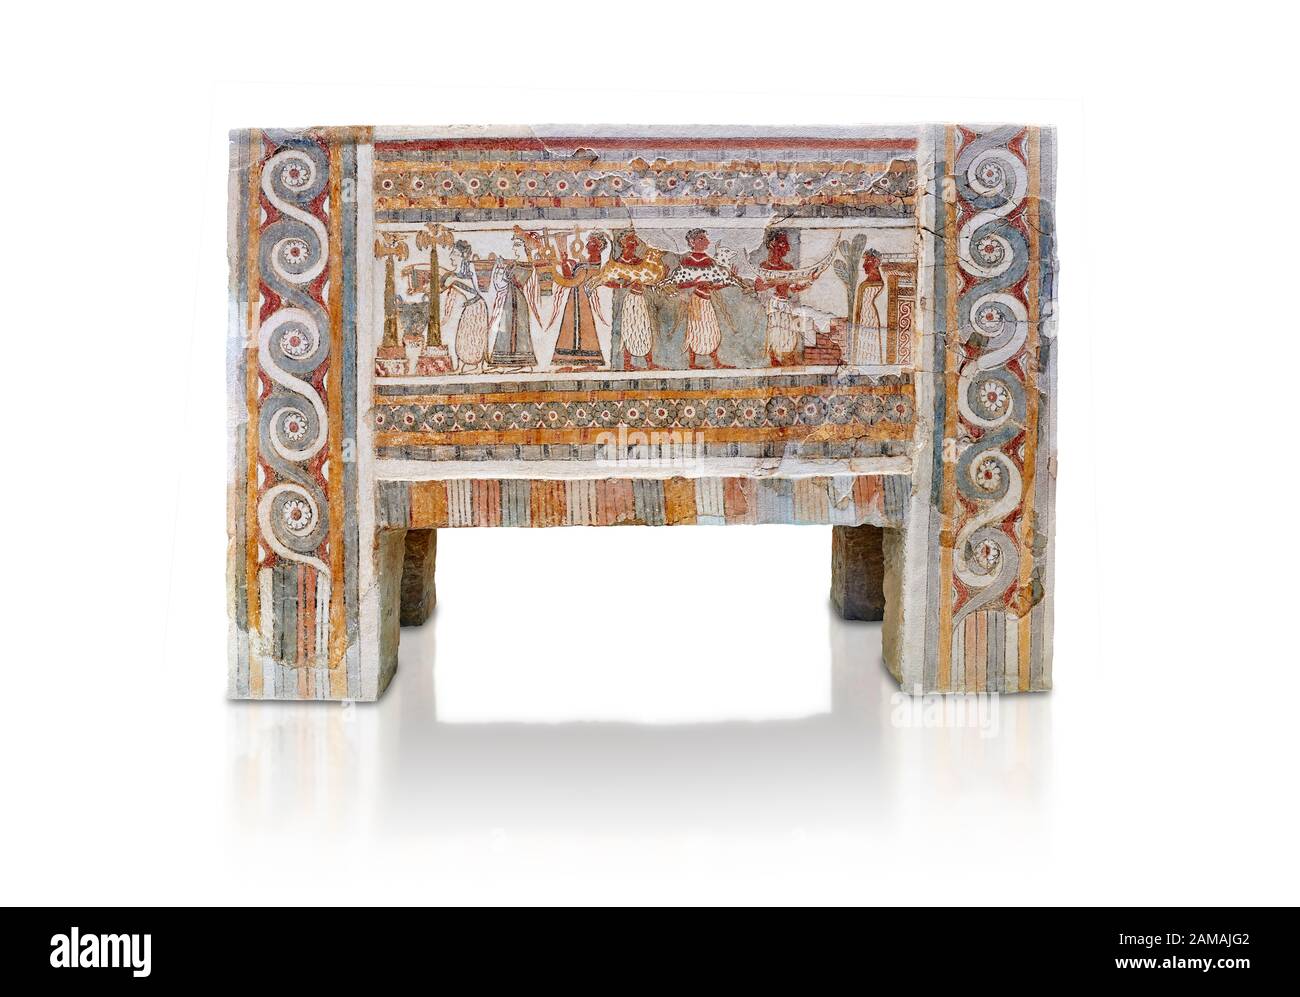 Le Sarcophage Minoan Hagia Triada peint 1370-1300 av. J.-C. Musée Archéologique D'Héraklion. Le Sarcophage calcaire Hagia Triada est peint avec de la fre Banque D'Images